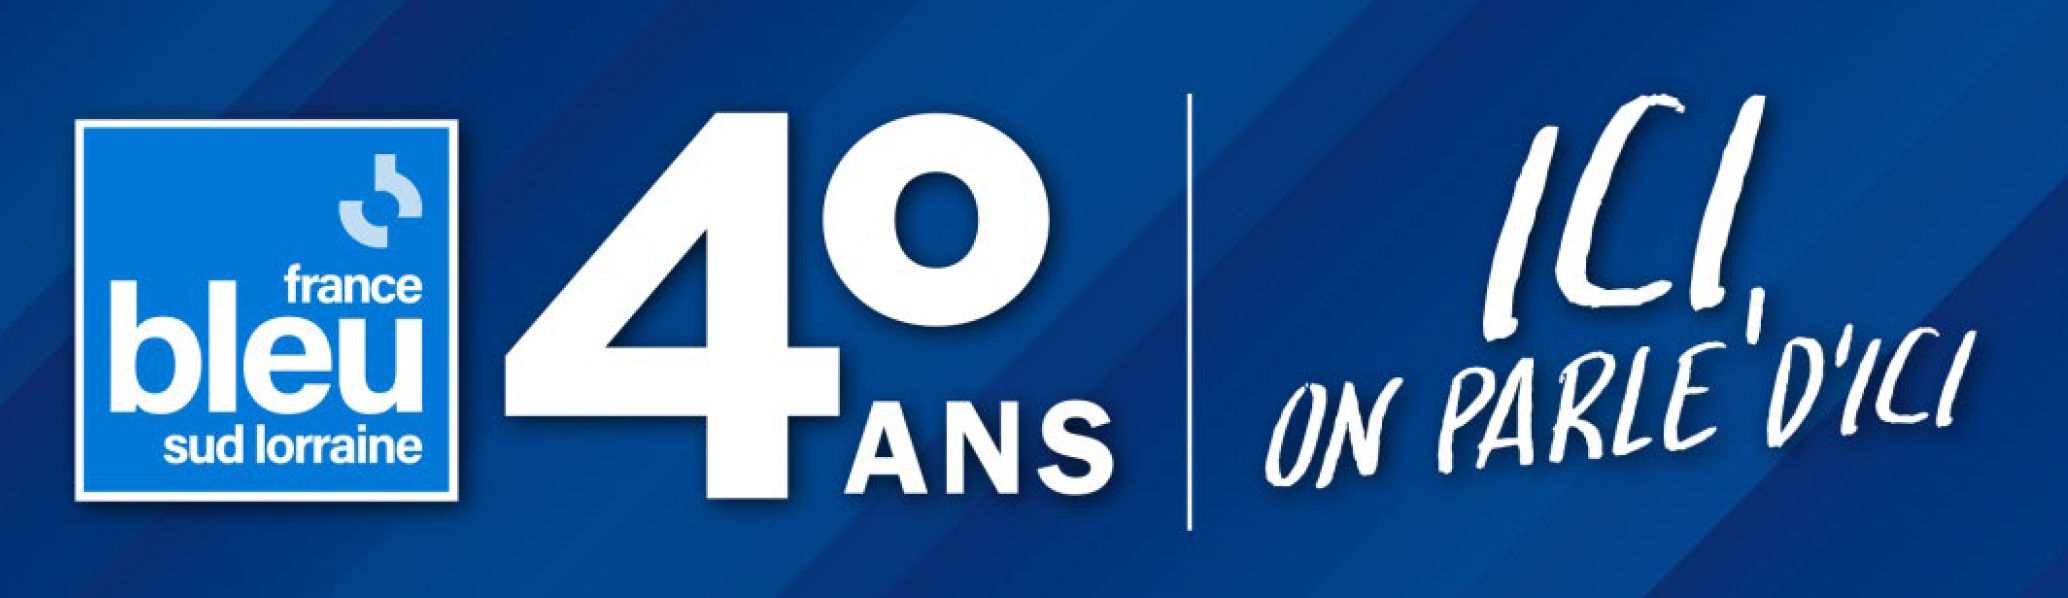 France Bleu Sud Lorraine fête 40 ans de proximité